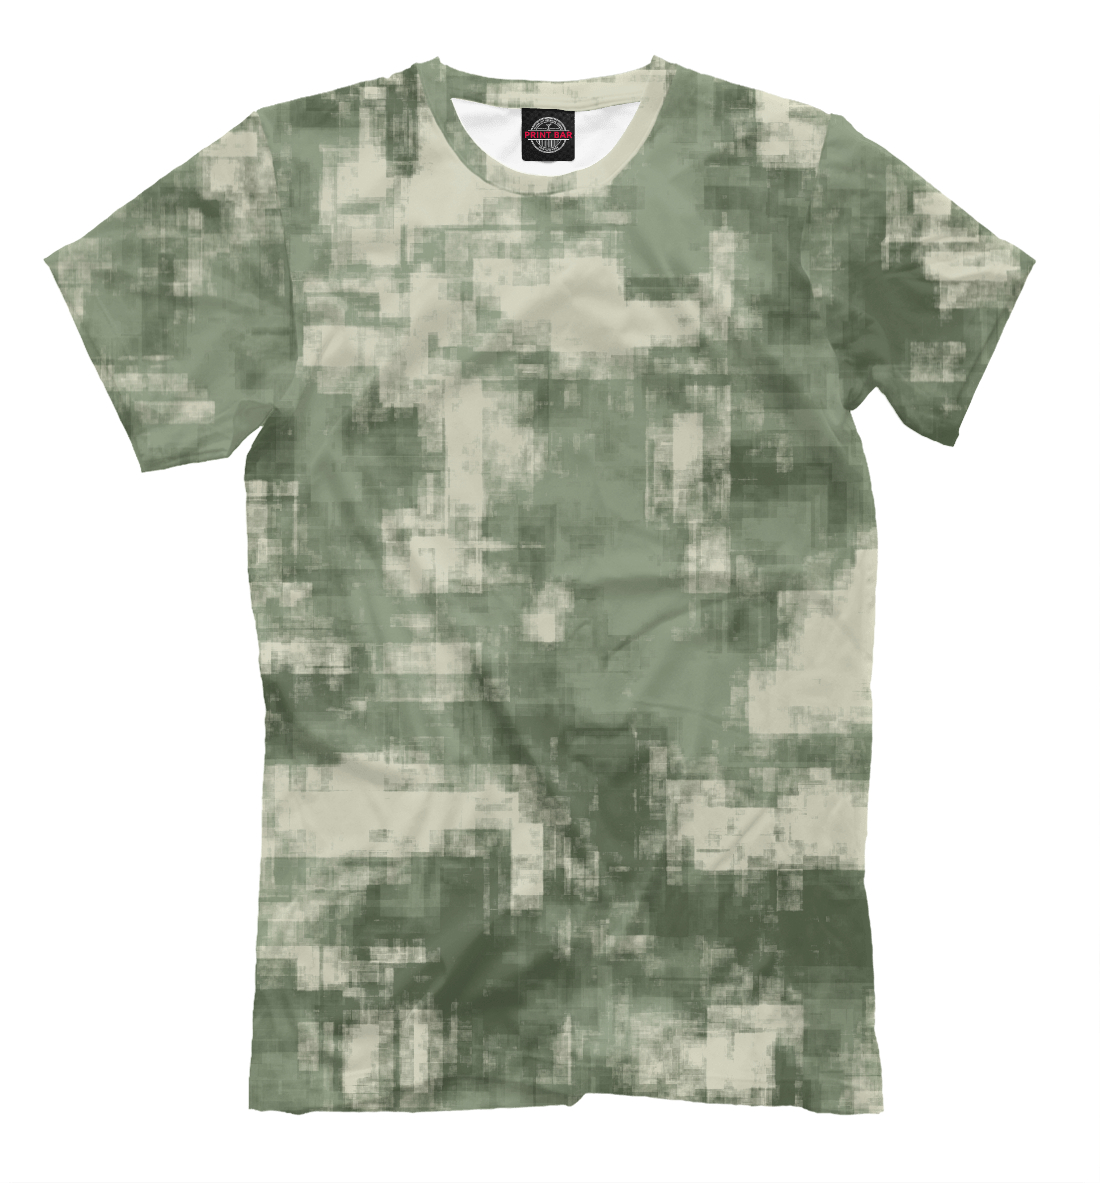 Футболка Военный камуфляж- одежда для мужчин и женщин для мальчиков, артикул: CMF-442561-fut-2mp